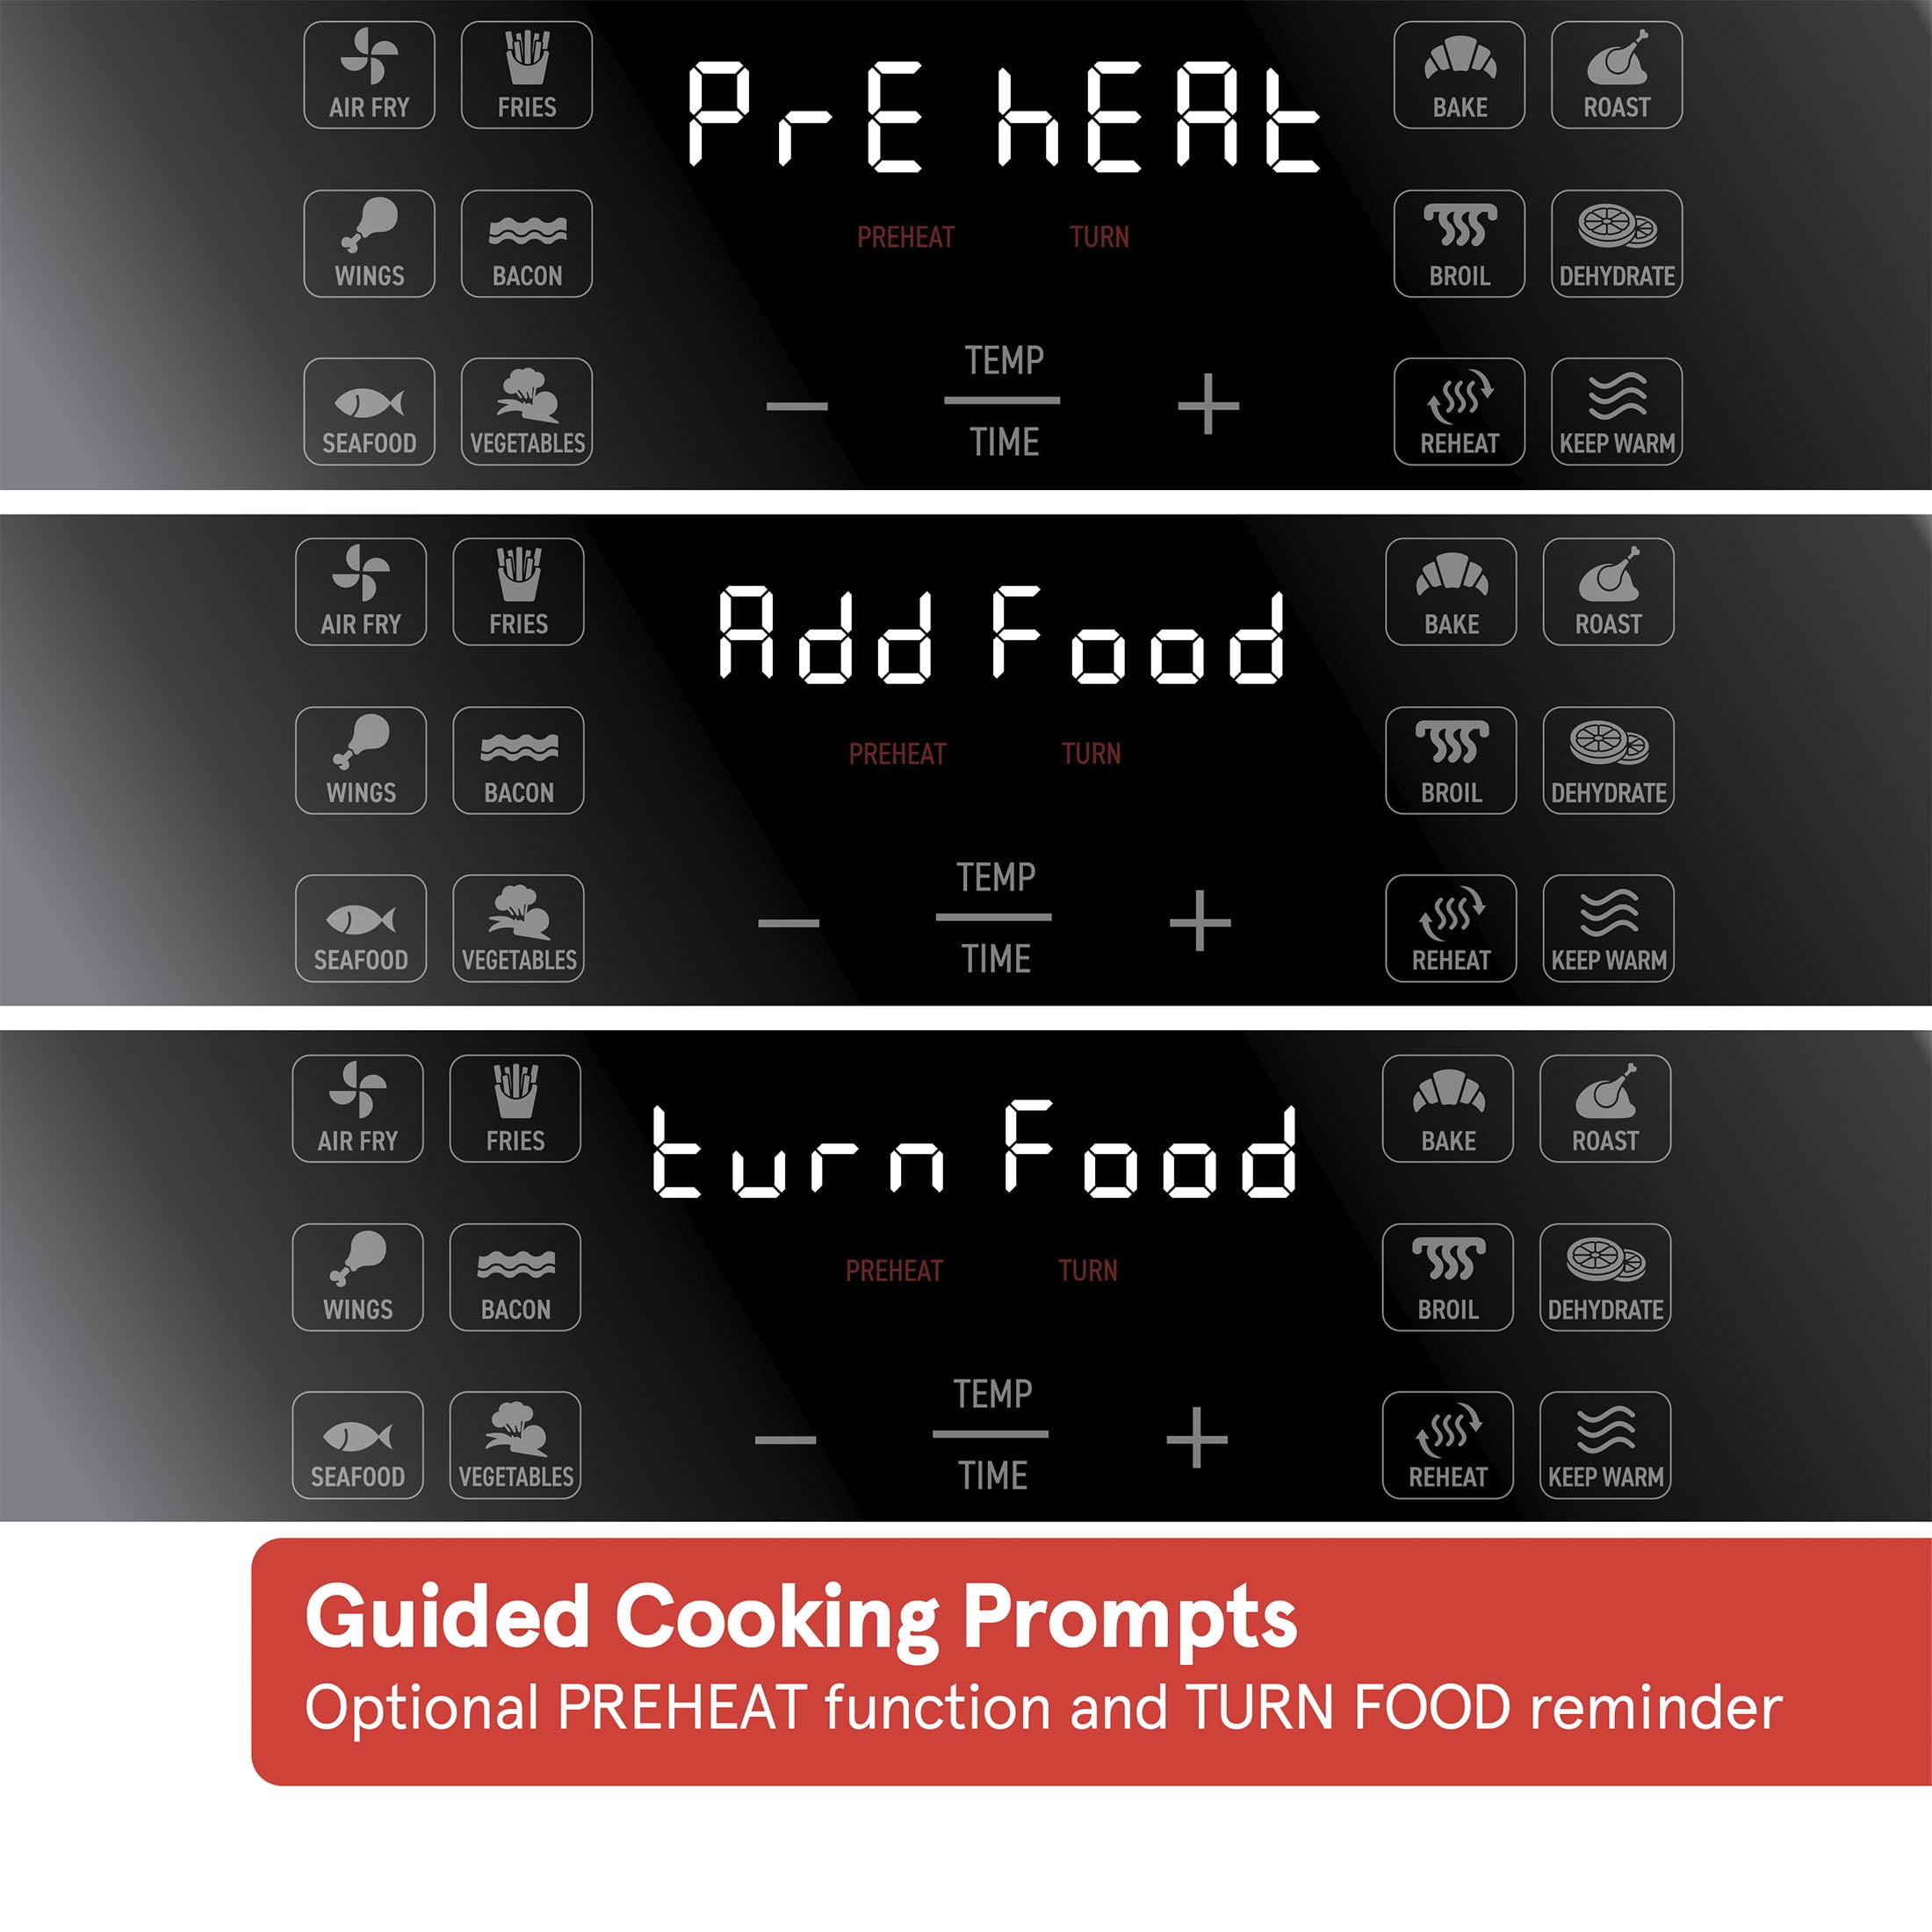 Air Fryers, Gourmia GAF265 4-Quart Digital Free Fry Air Fryer- No Oil  Healthy Frying - LCD Display - 8 Presets - 1200 Watt - Recipe Book Included